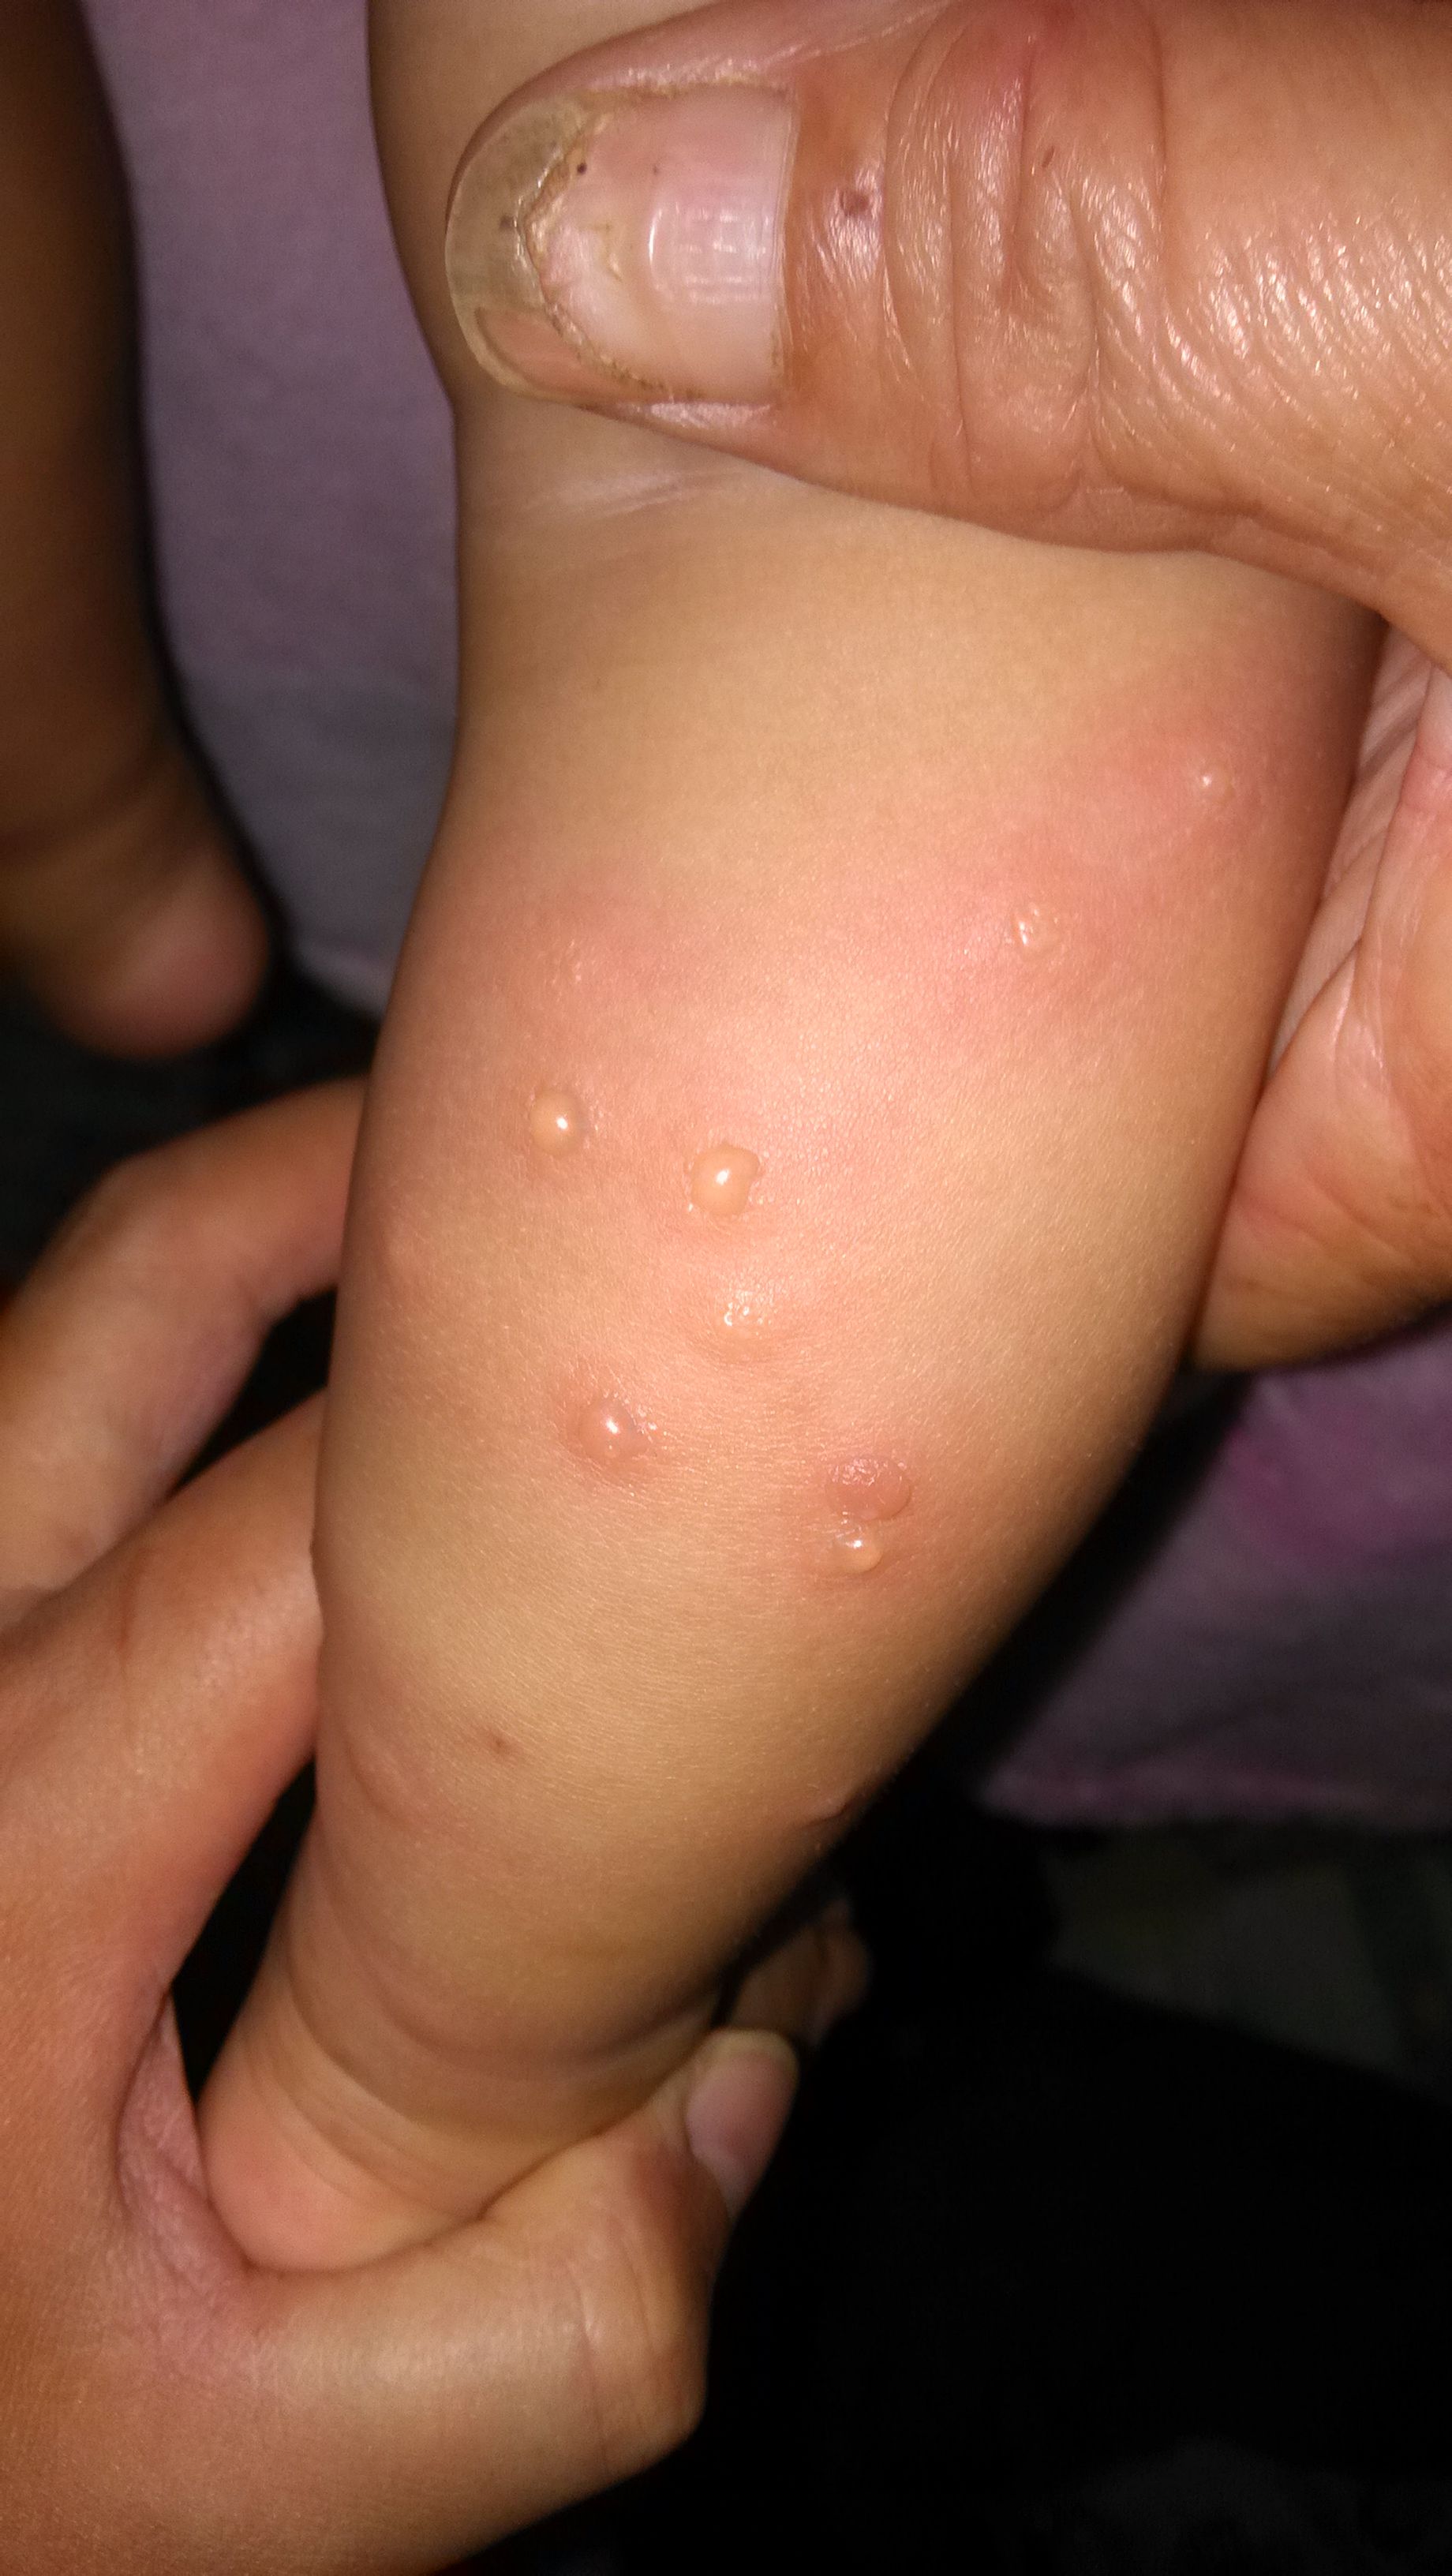 求求大夫们告诉我宝宝身上起的红疹是什么啊?